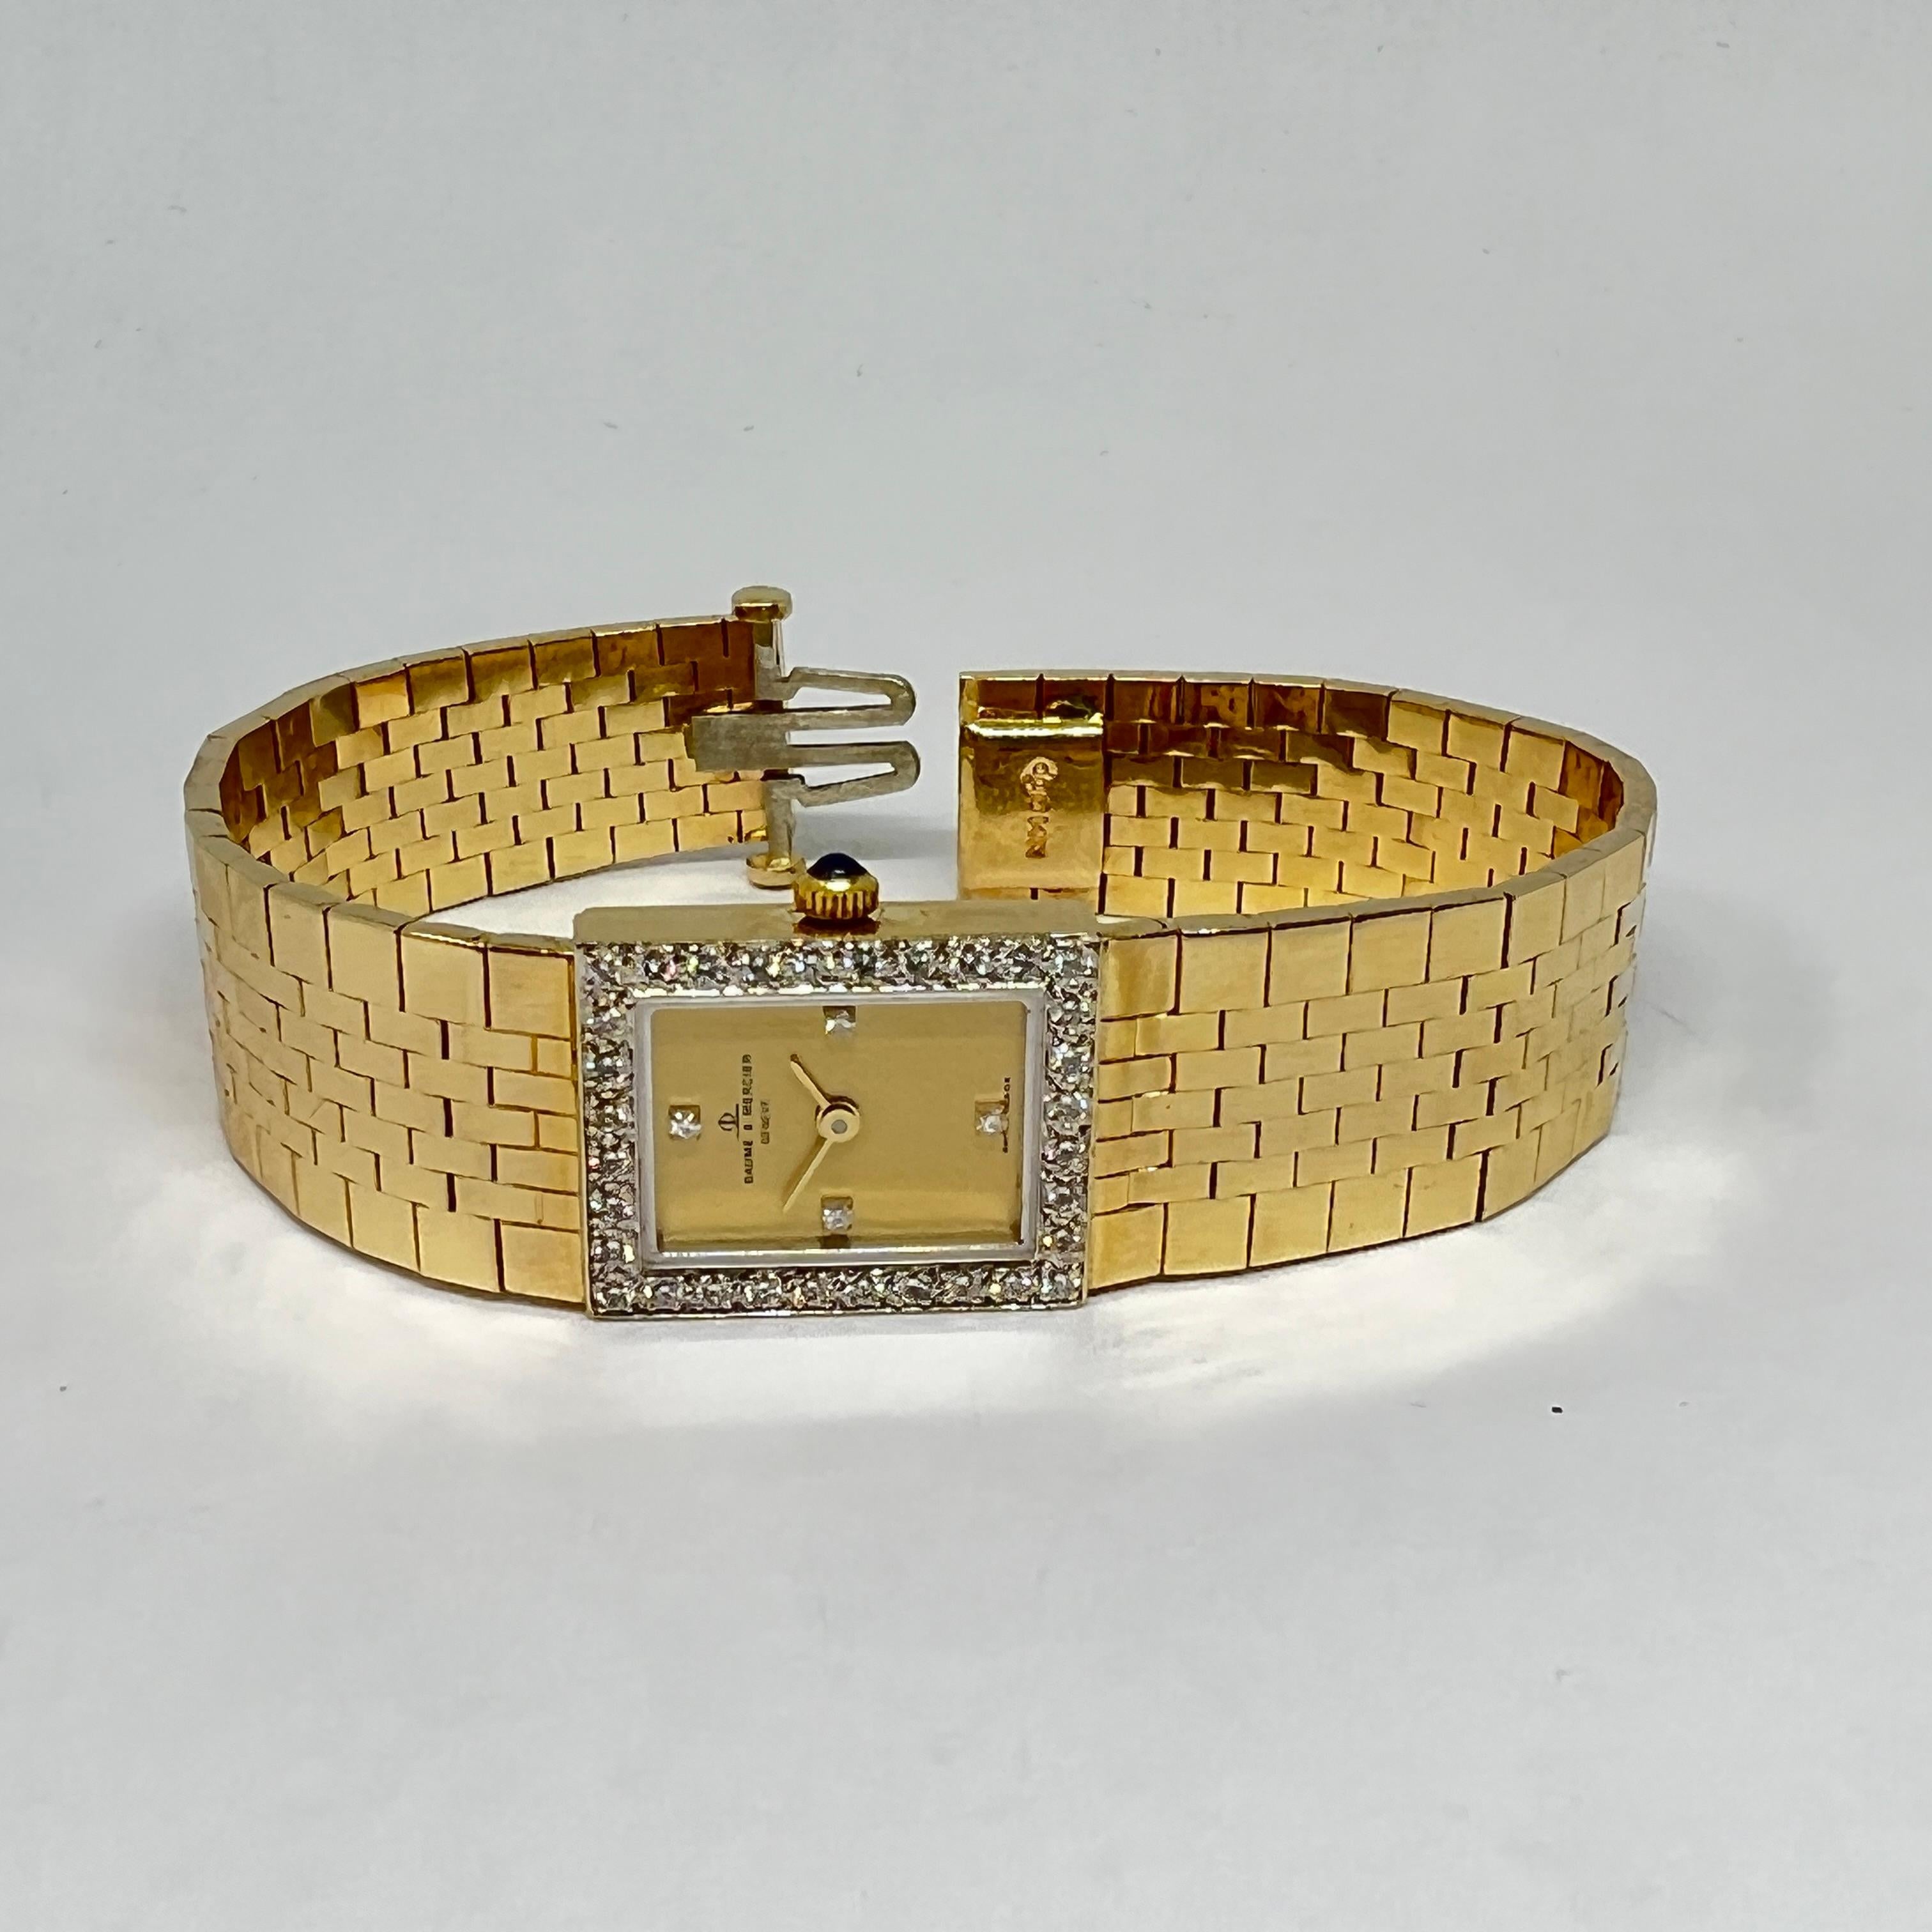 Montre Baume & Mercier Classic Vintage Diamond Mesh pour dames, d'occasion. La montre est conçue en or jaune 14 carats, le cadran mesure 15 x 18 mm avec une lunette et des index en diamant pavé, un cadran à finition mate en tonalité or, un bracelet